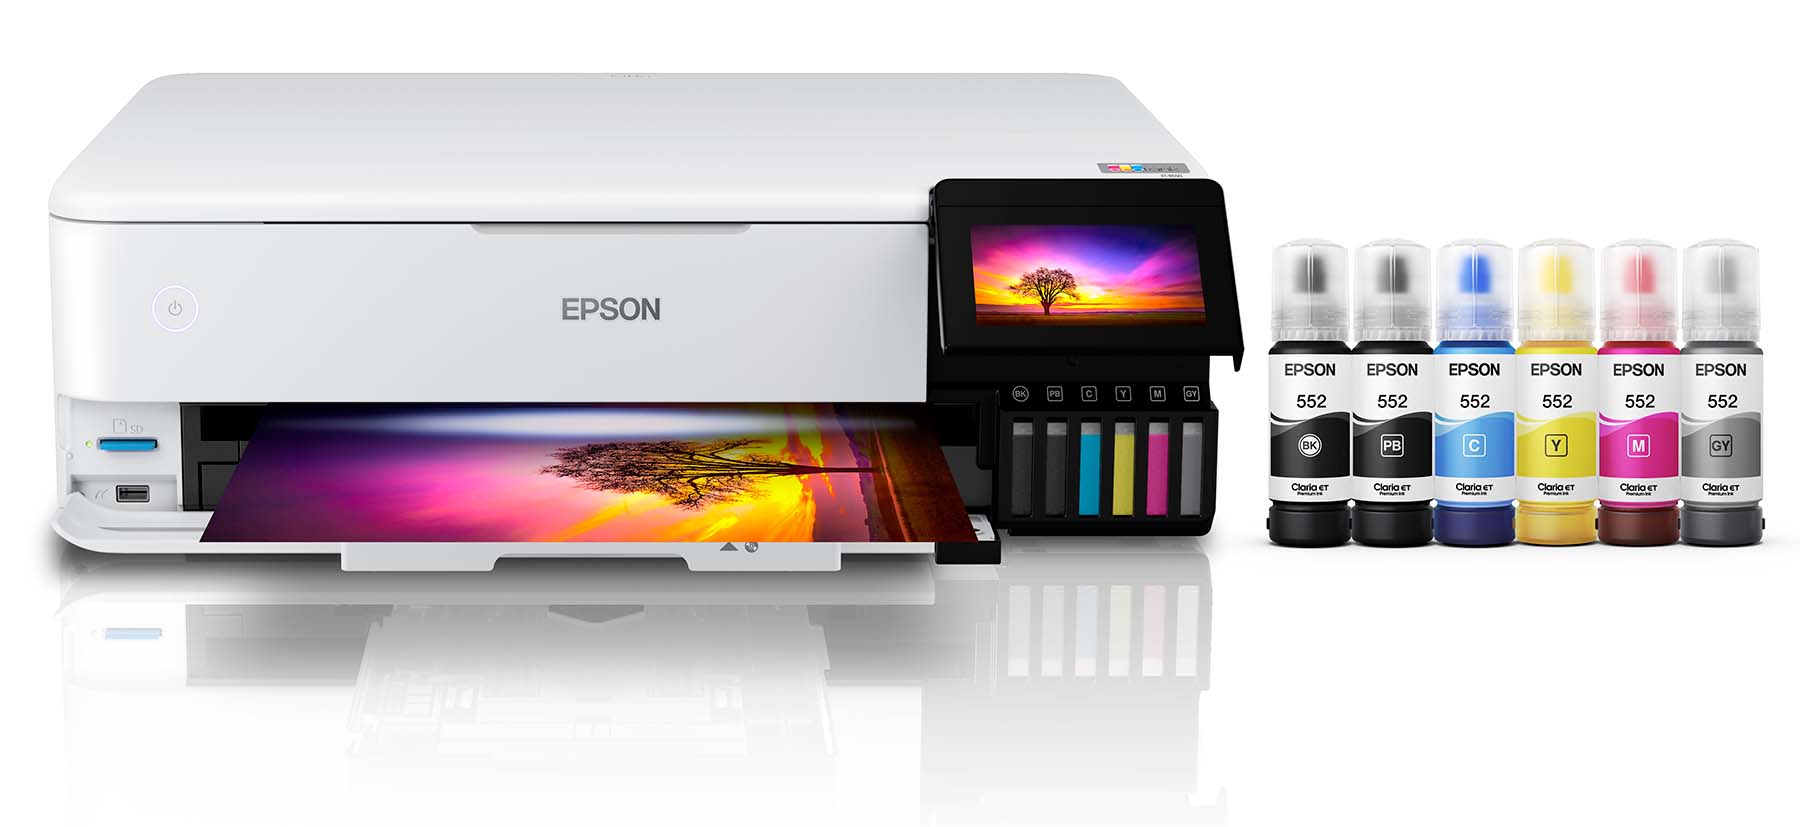 Epson EcoTank Photo ET-8500 Wireless All-in-One Supertank Printer